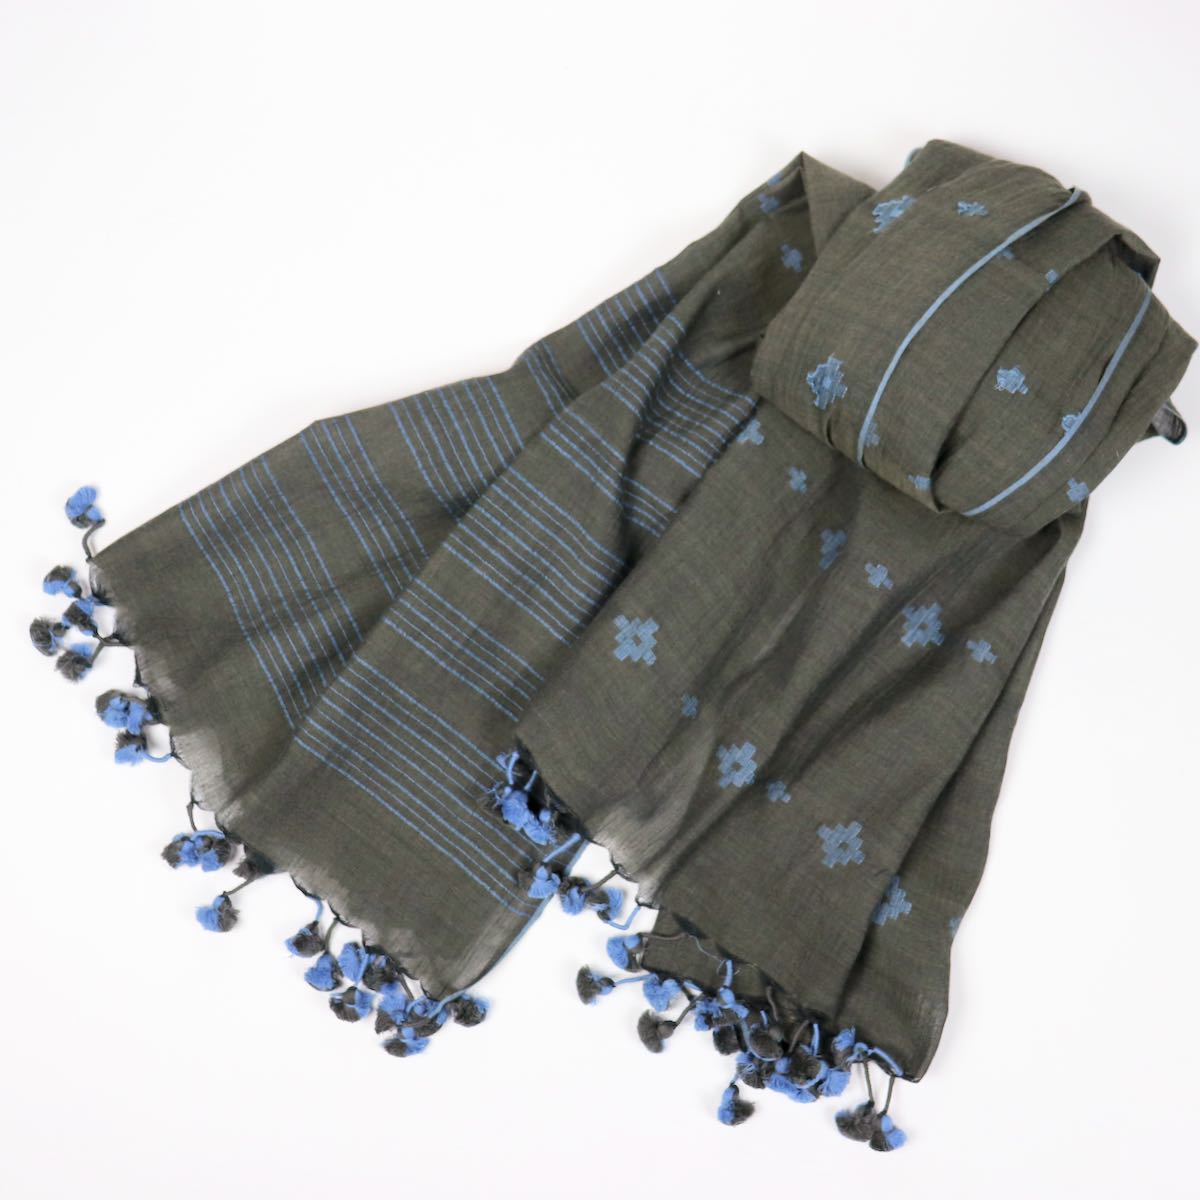 indigo and gray handwoven cotton scarf